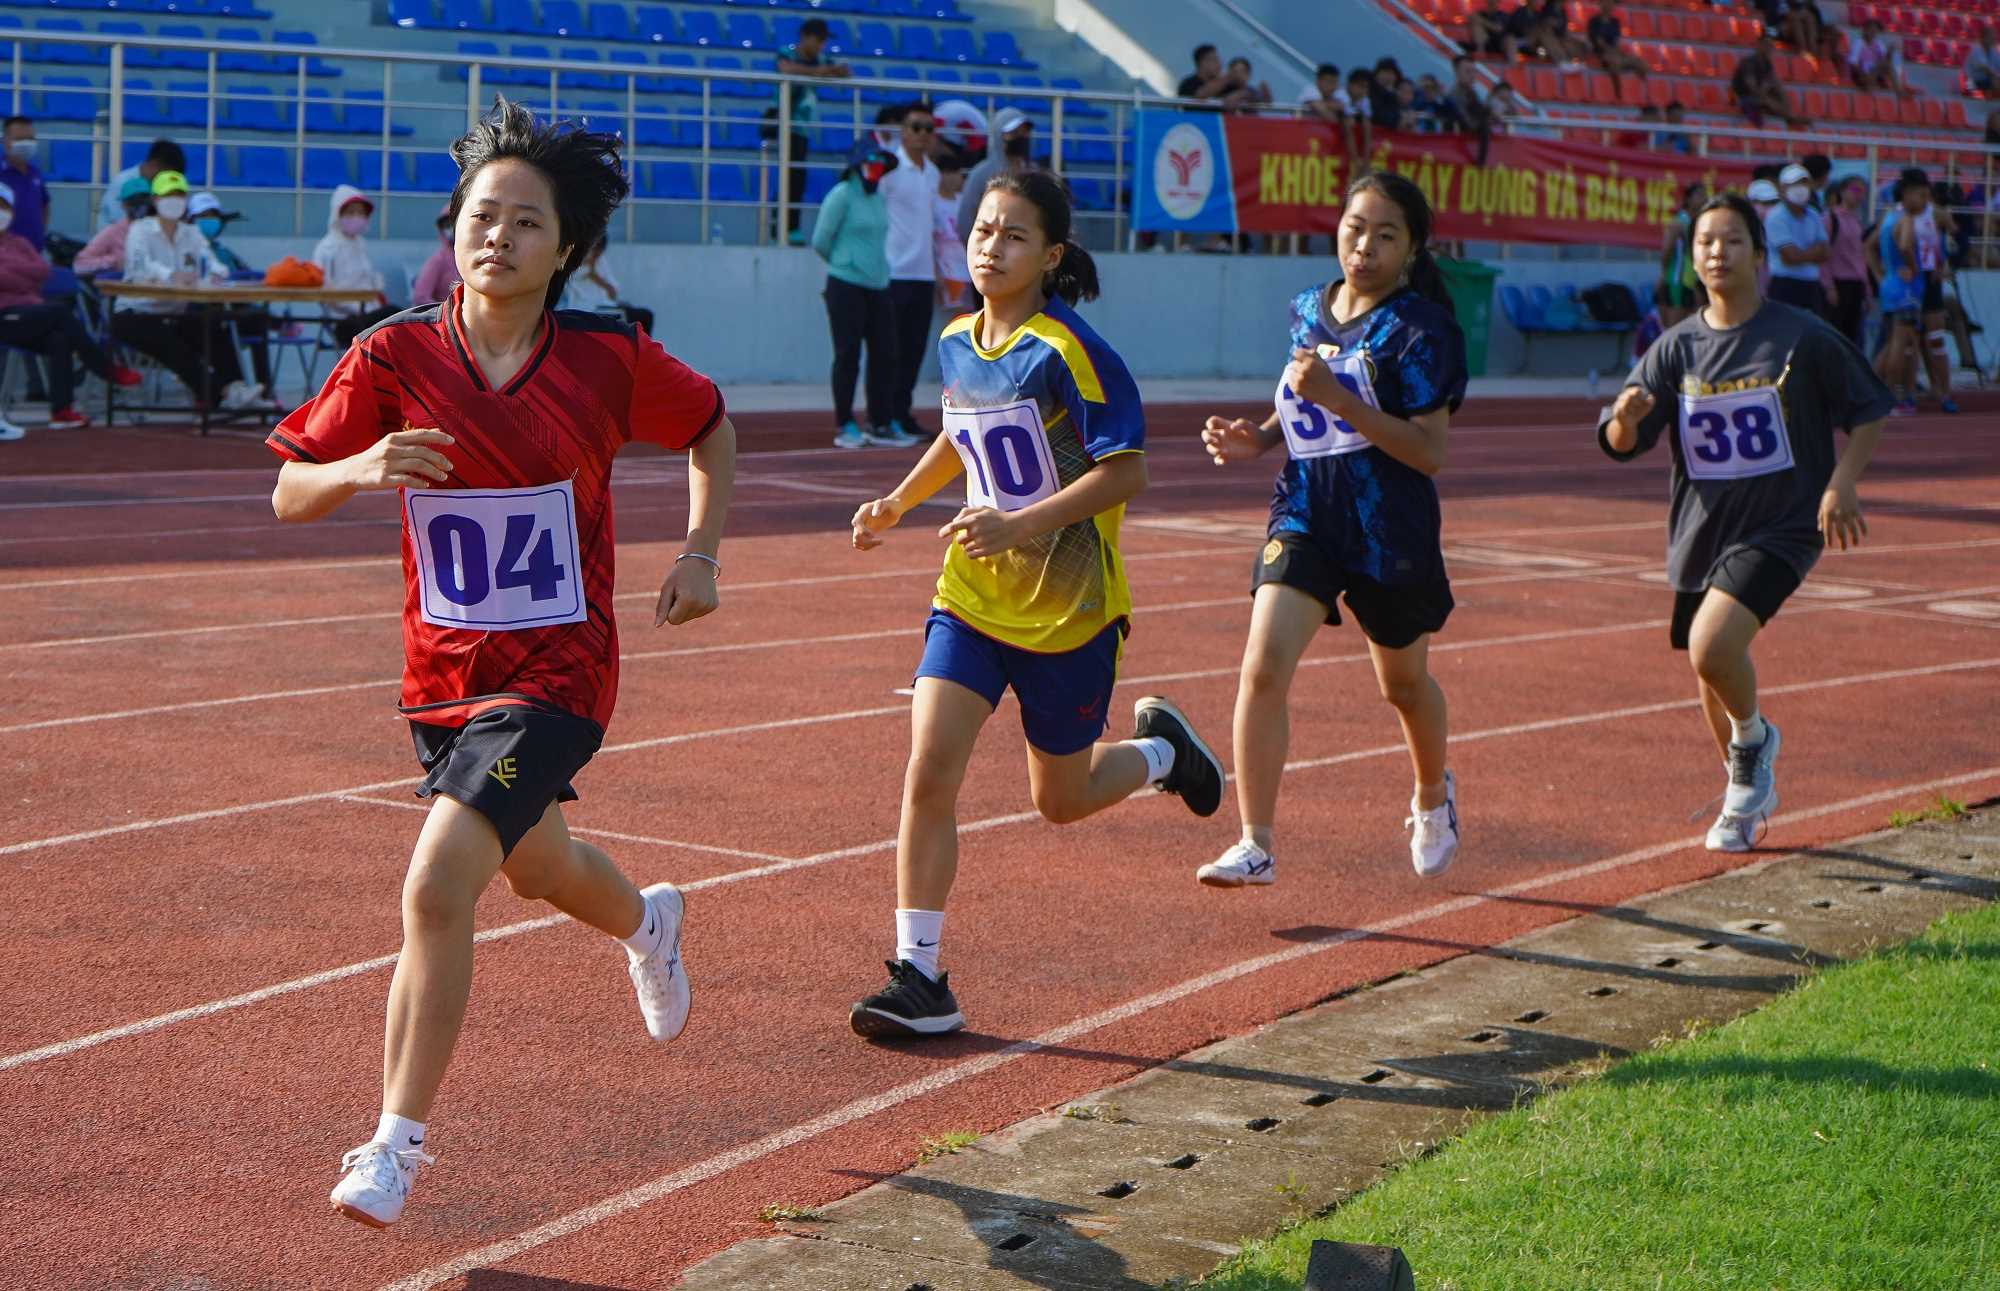 Thể dục thể thao Quảng Ninh vững bước trên chặng đường mới - Ảnh 5.